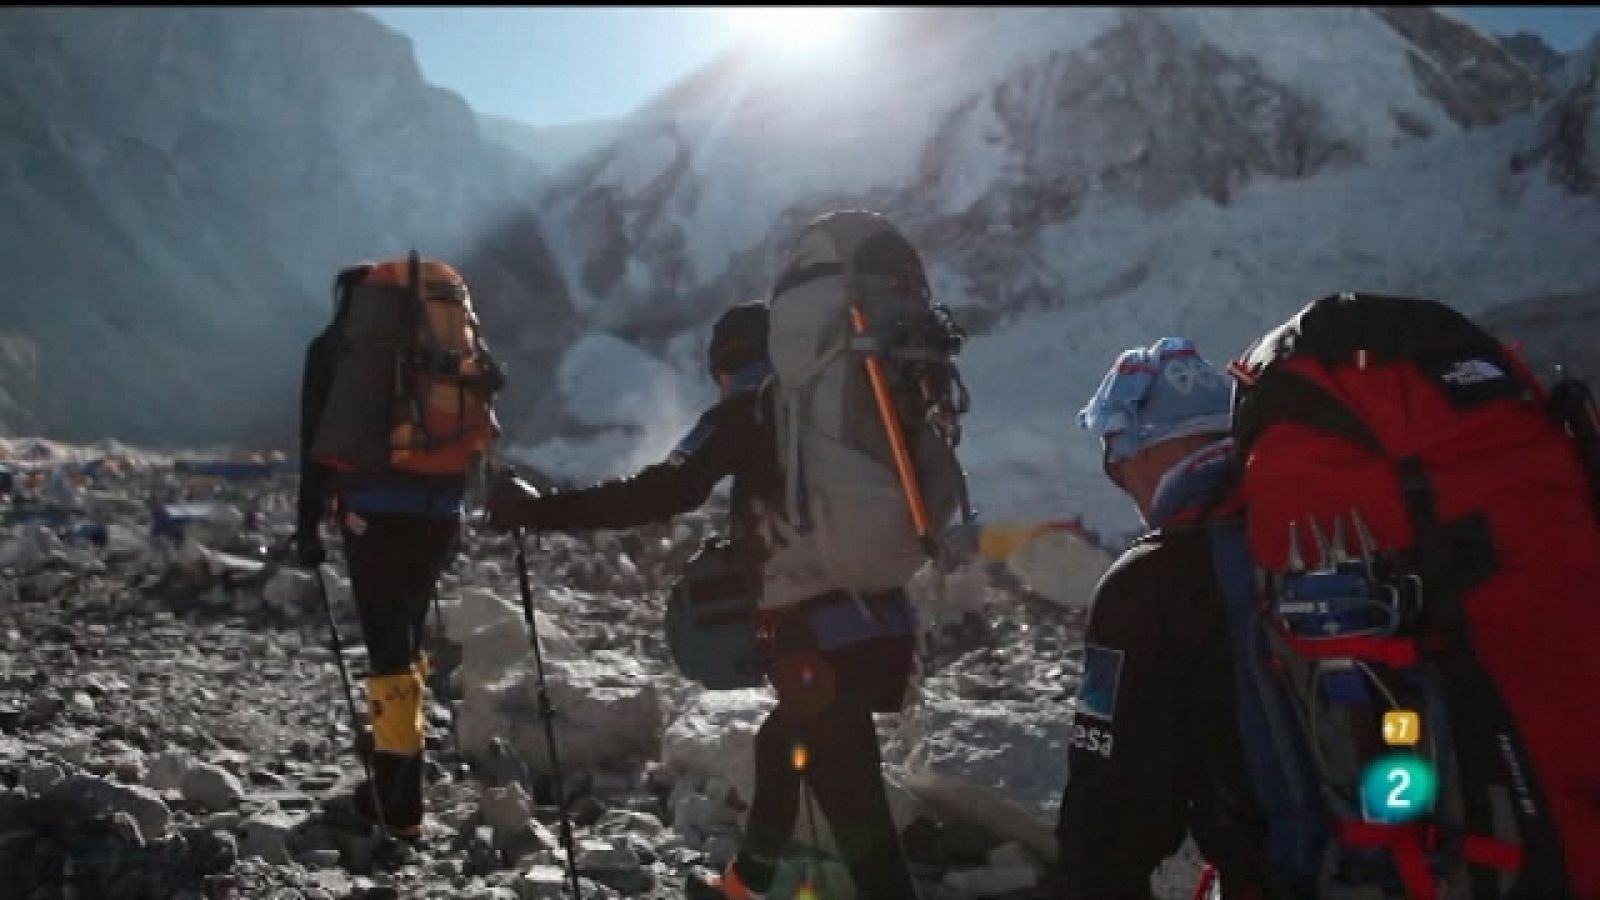 Desafío 14+1: Everest sin O2 (Edurne Pasabán) - Capítulo 7